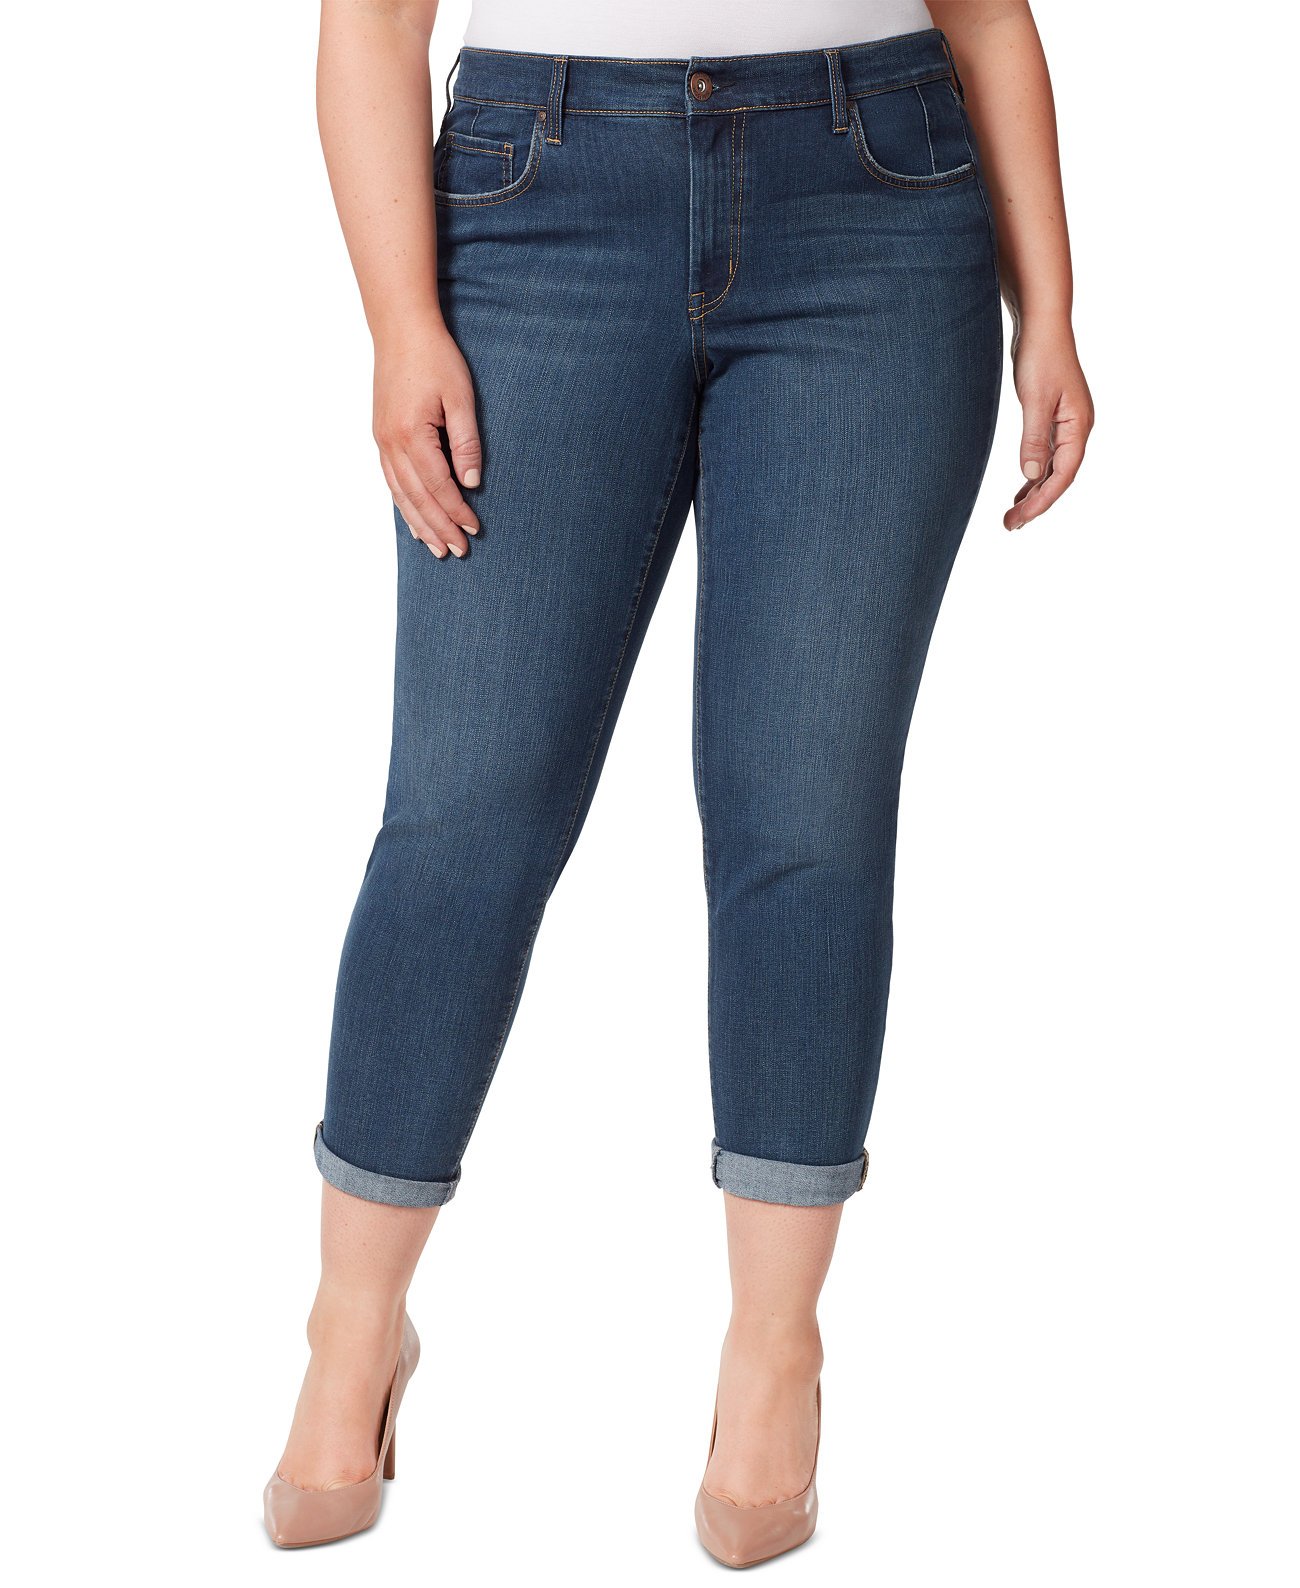 Модные джинсы-скинни Mika Best Friend больших размеров Jessica Simpson